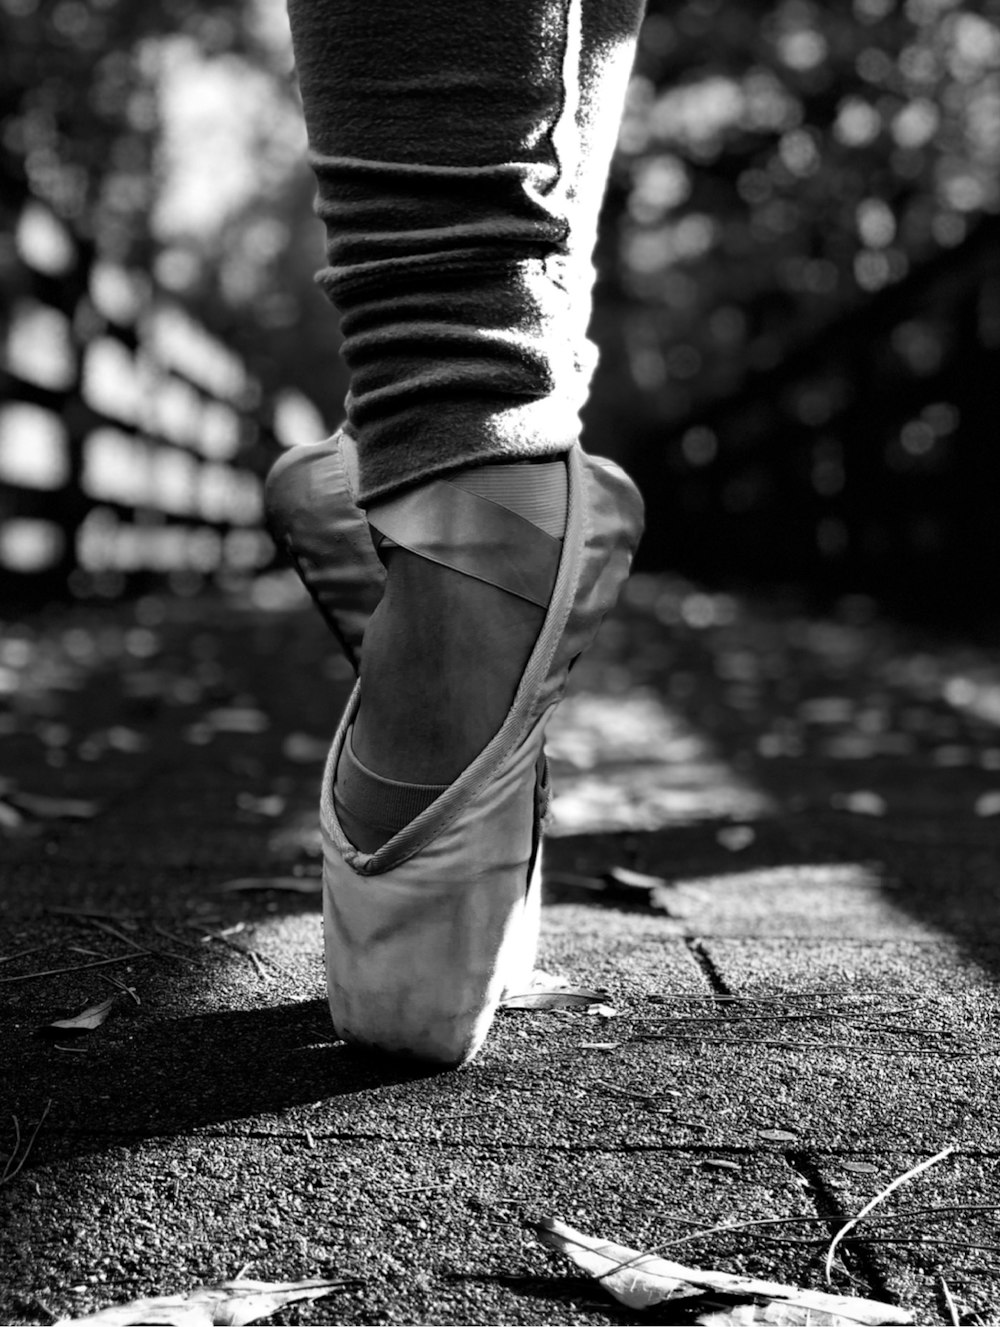 une photo en noir et blanc d’une personne portant des chaussures de ballet